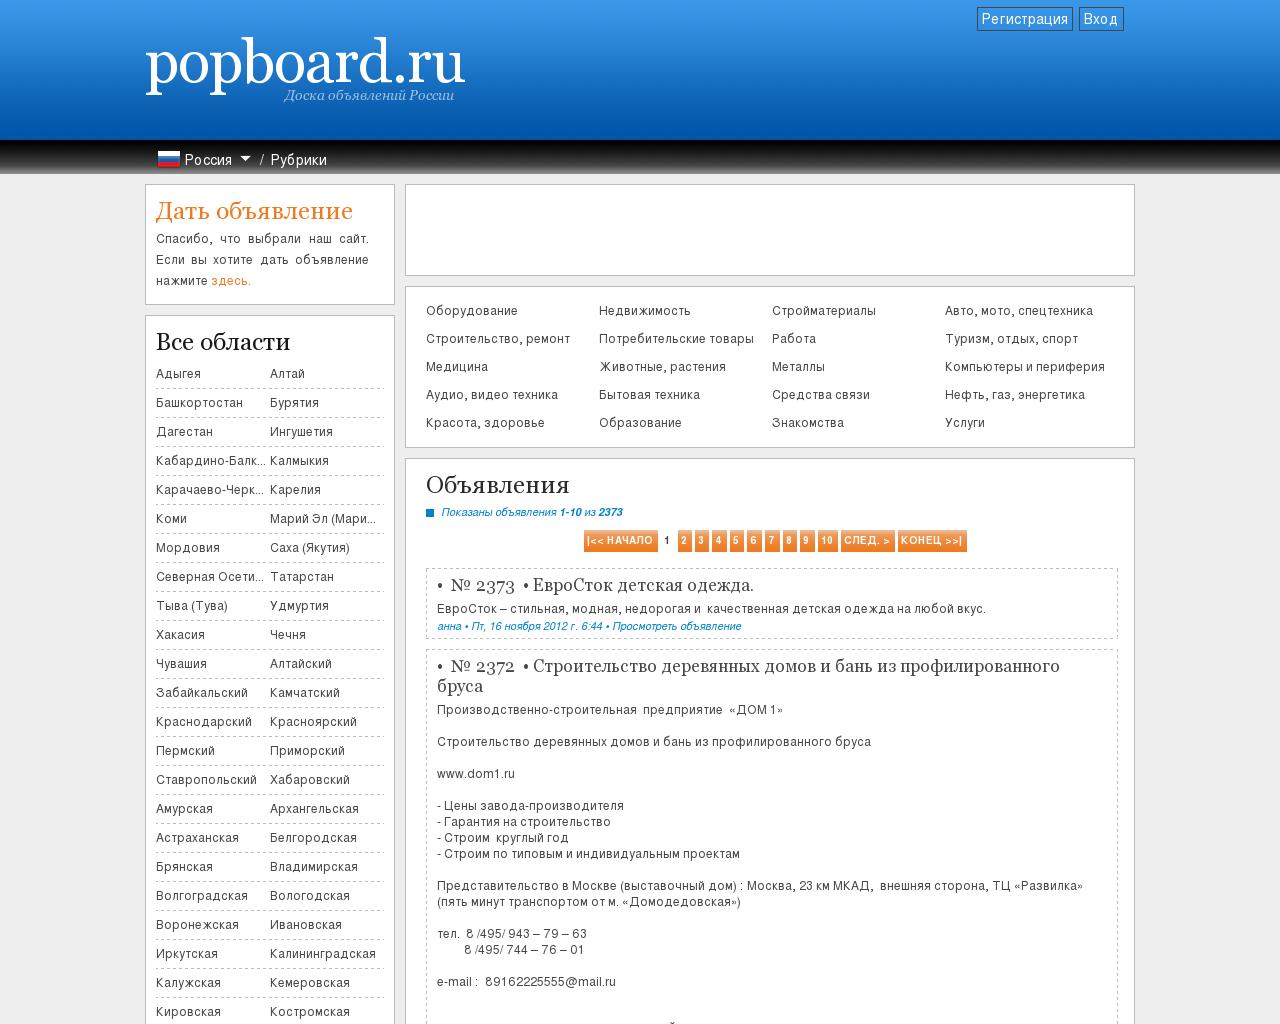 Изображение сайта popboard.ru в разрешении 1280x1024